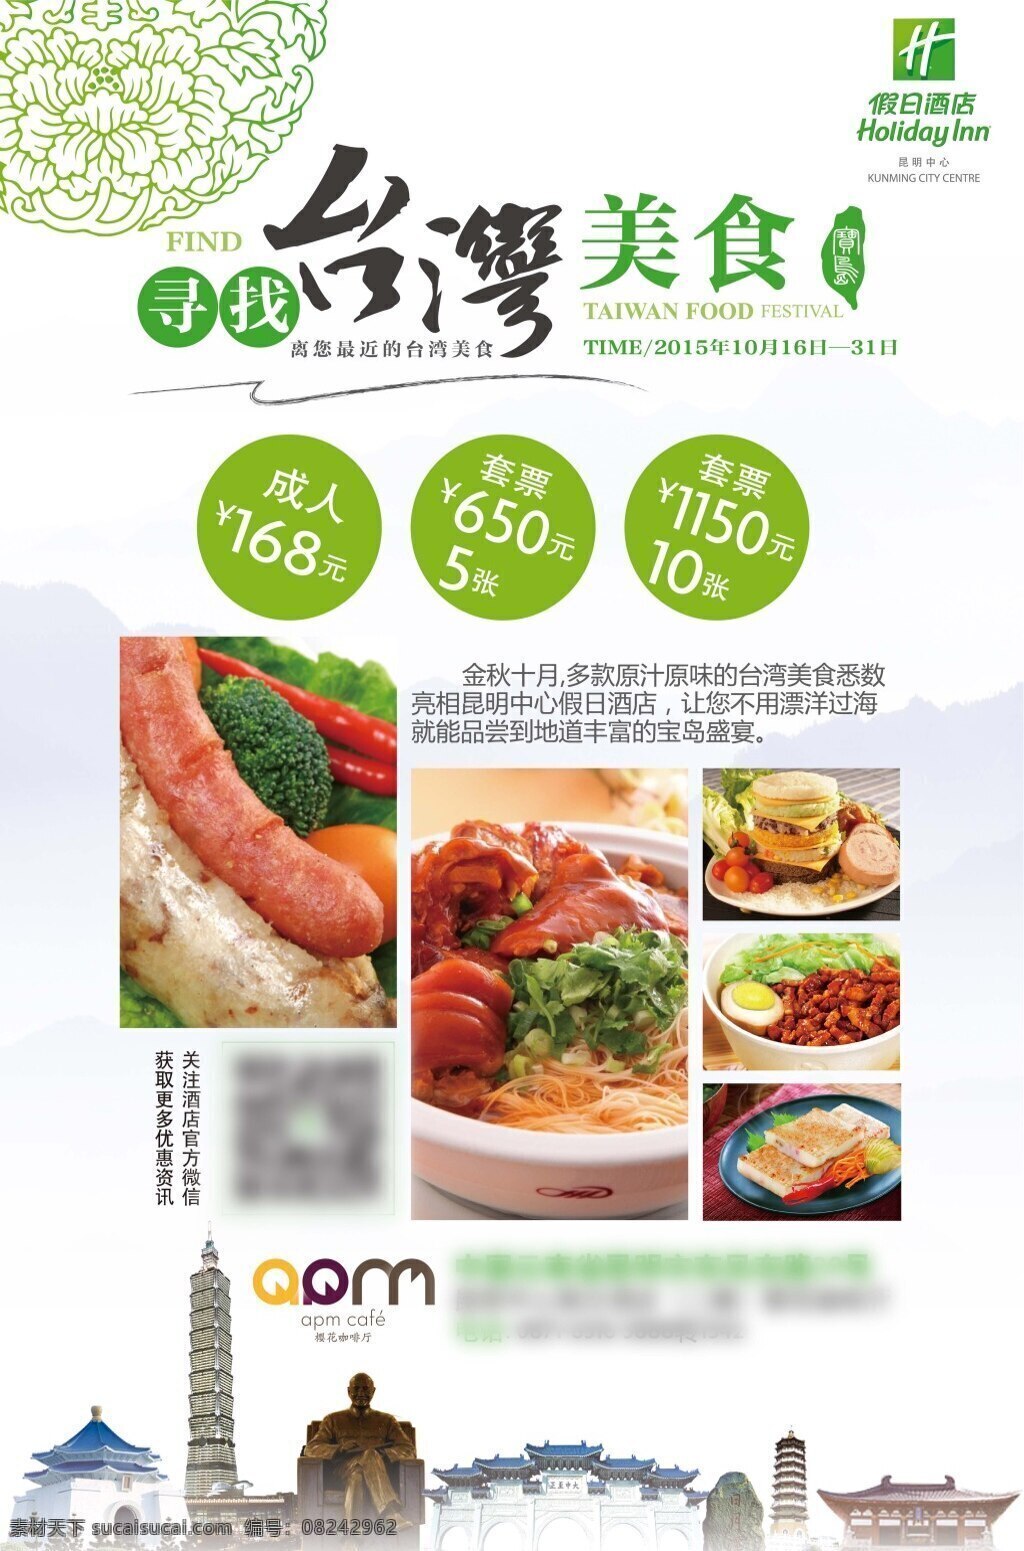 电梯海报 台湾美食节 台湾 台湾美食